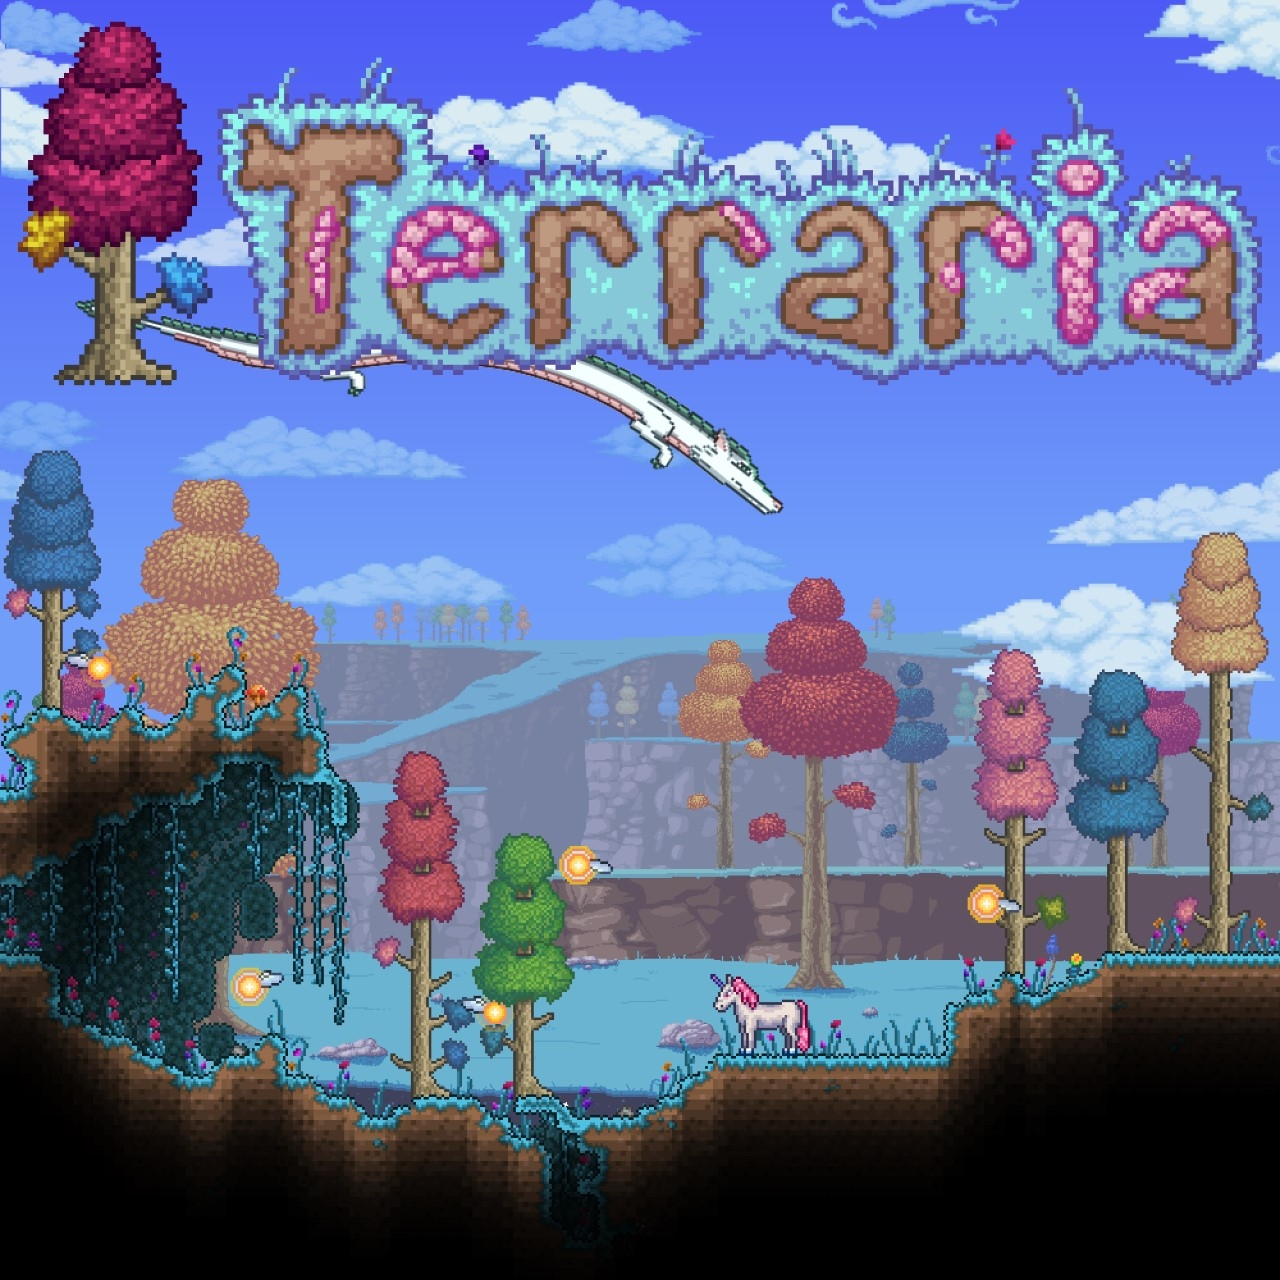 terraria 1.4.4.9.2 download